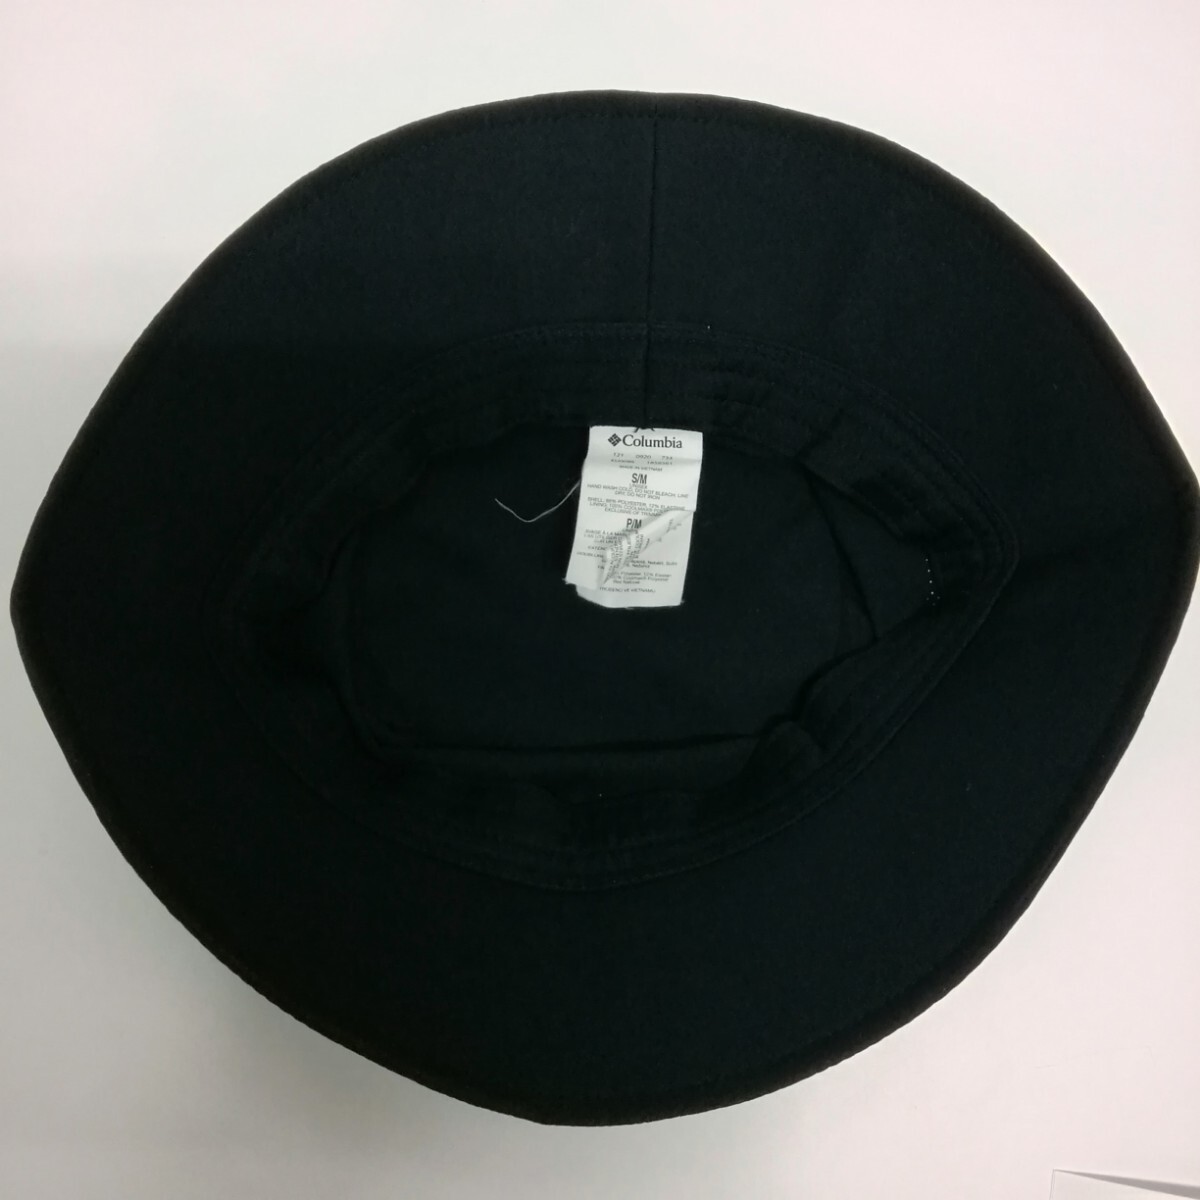 Columbia コロンビア ハット 帽子 Hat S/M ブラック